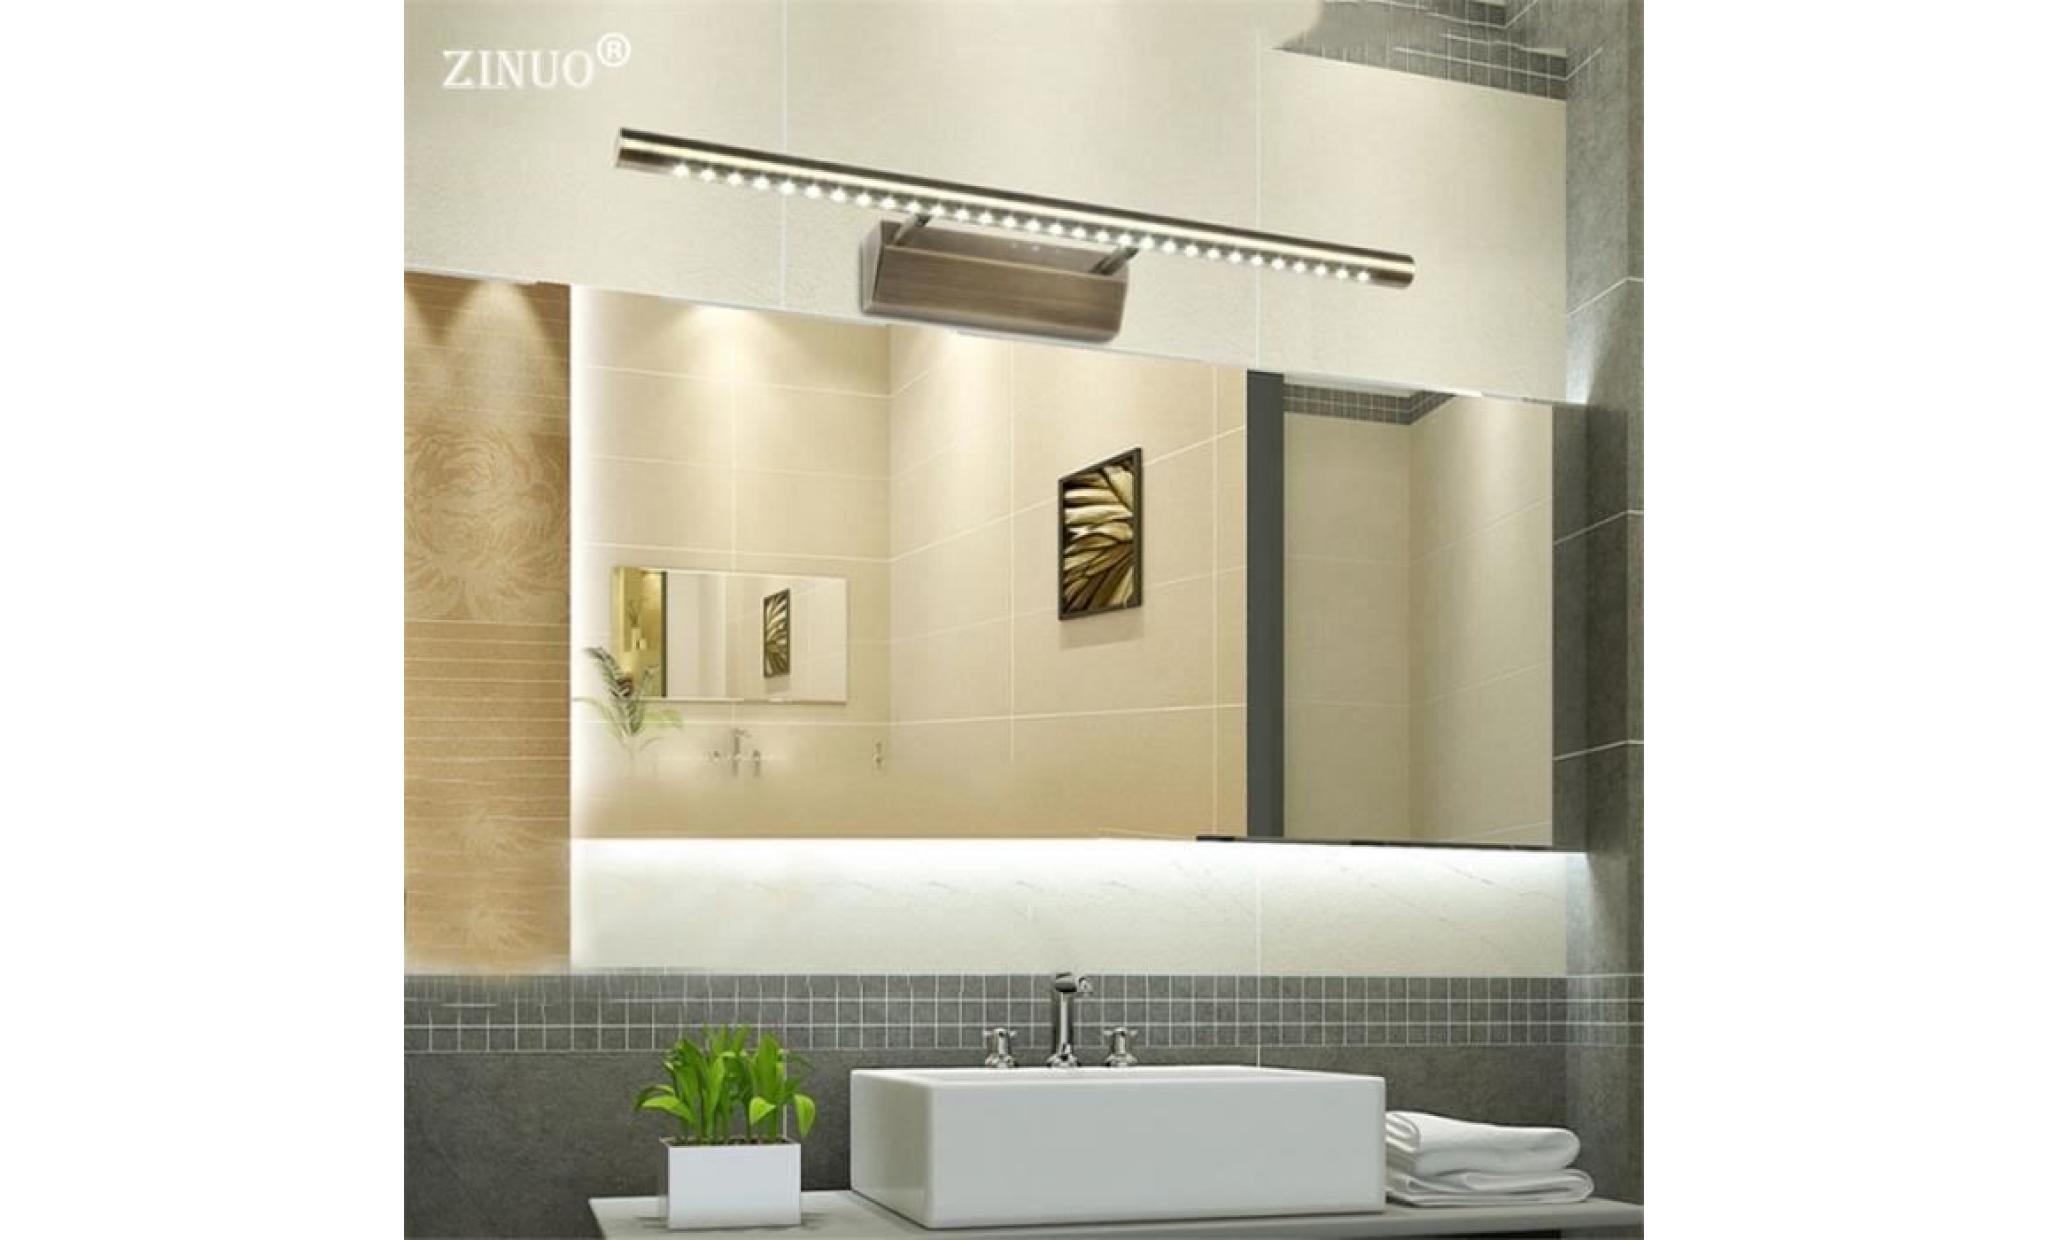 5w 40cm moderne led salle de bains miroir lumière anti buée chambre tête de lit Étanche mur monté applique lampes pas cher